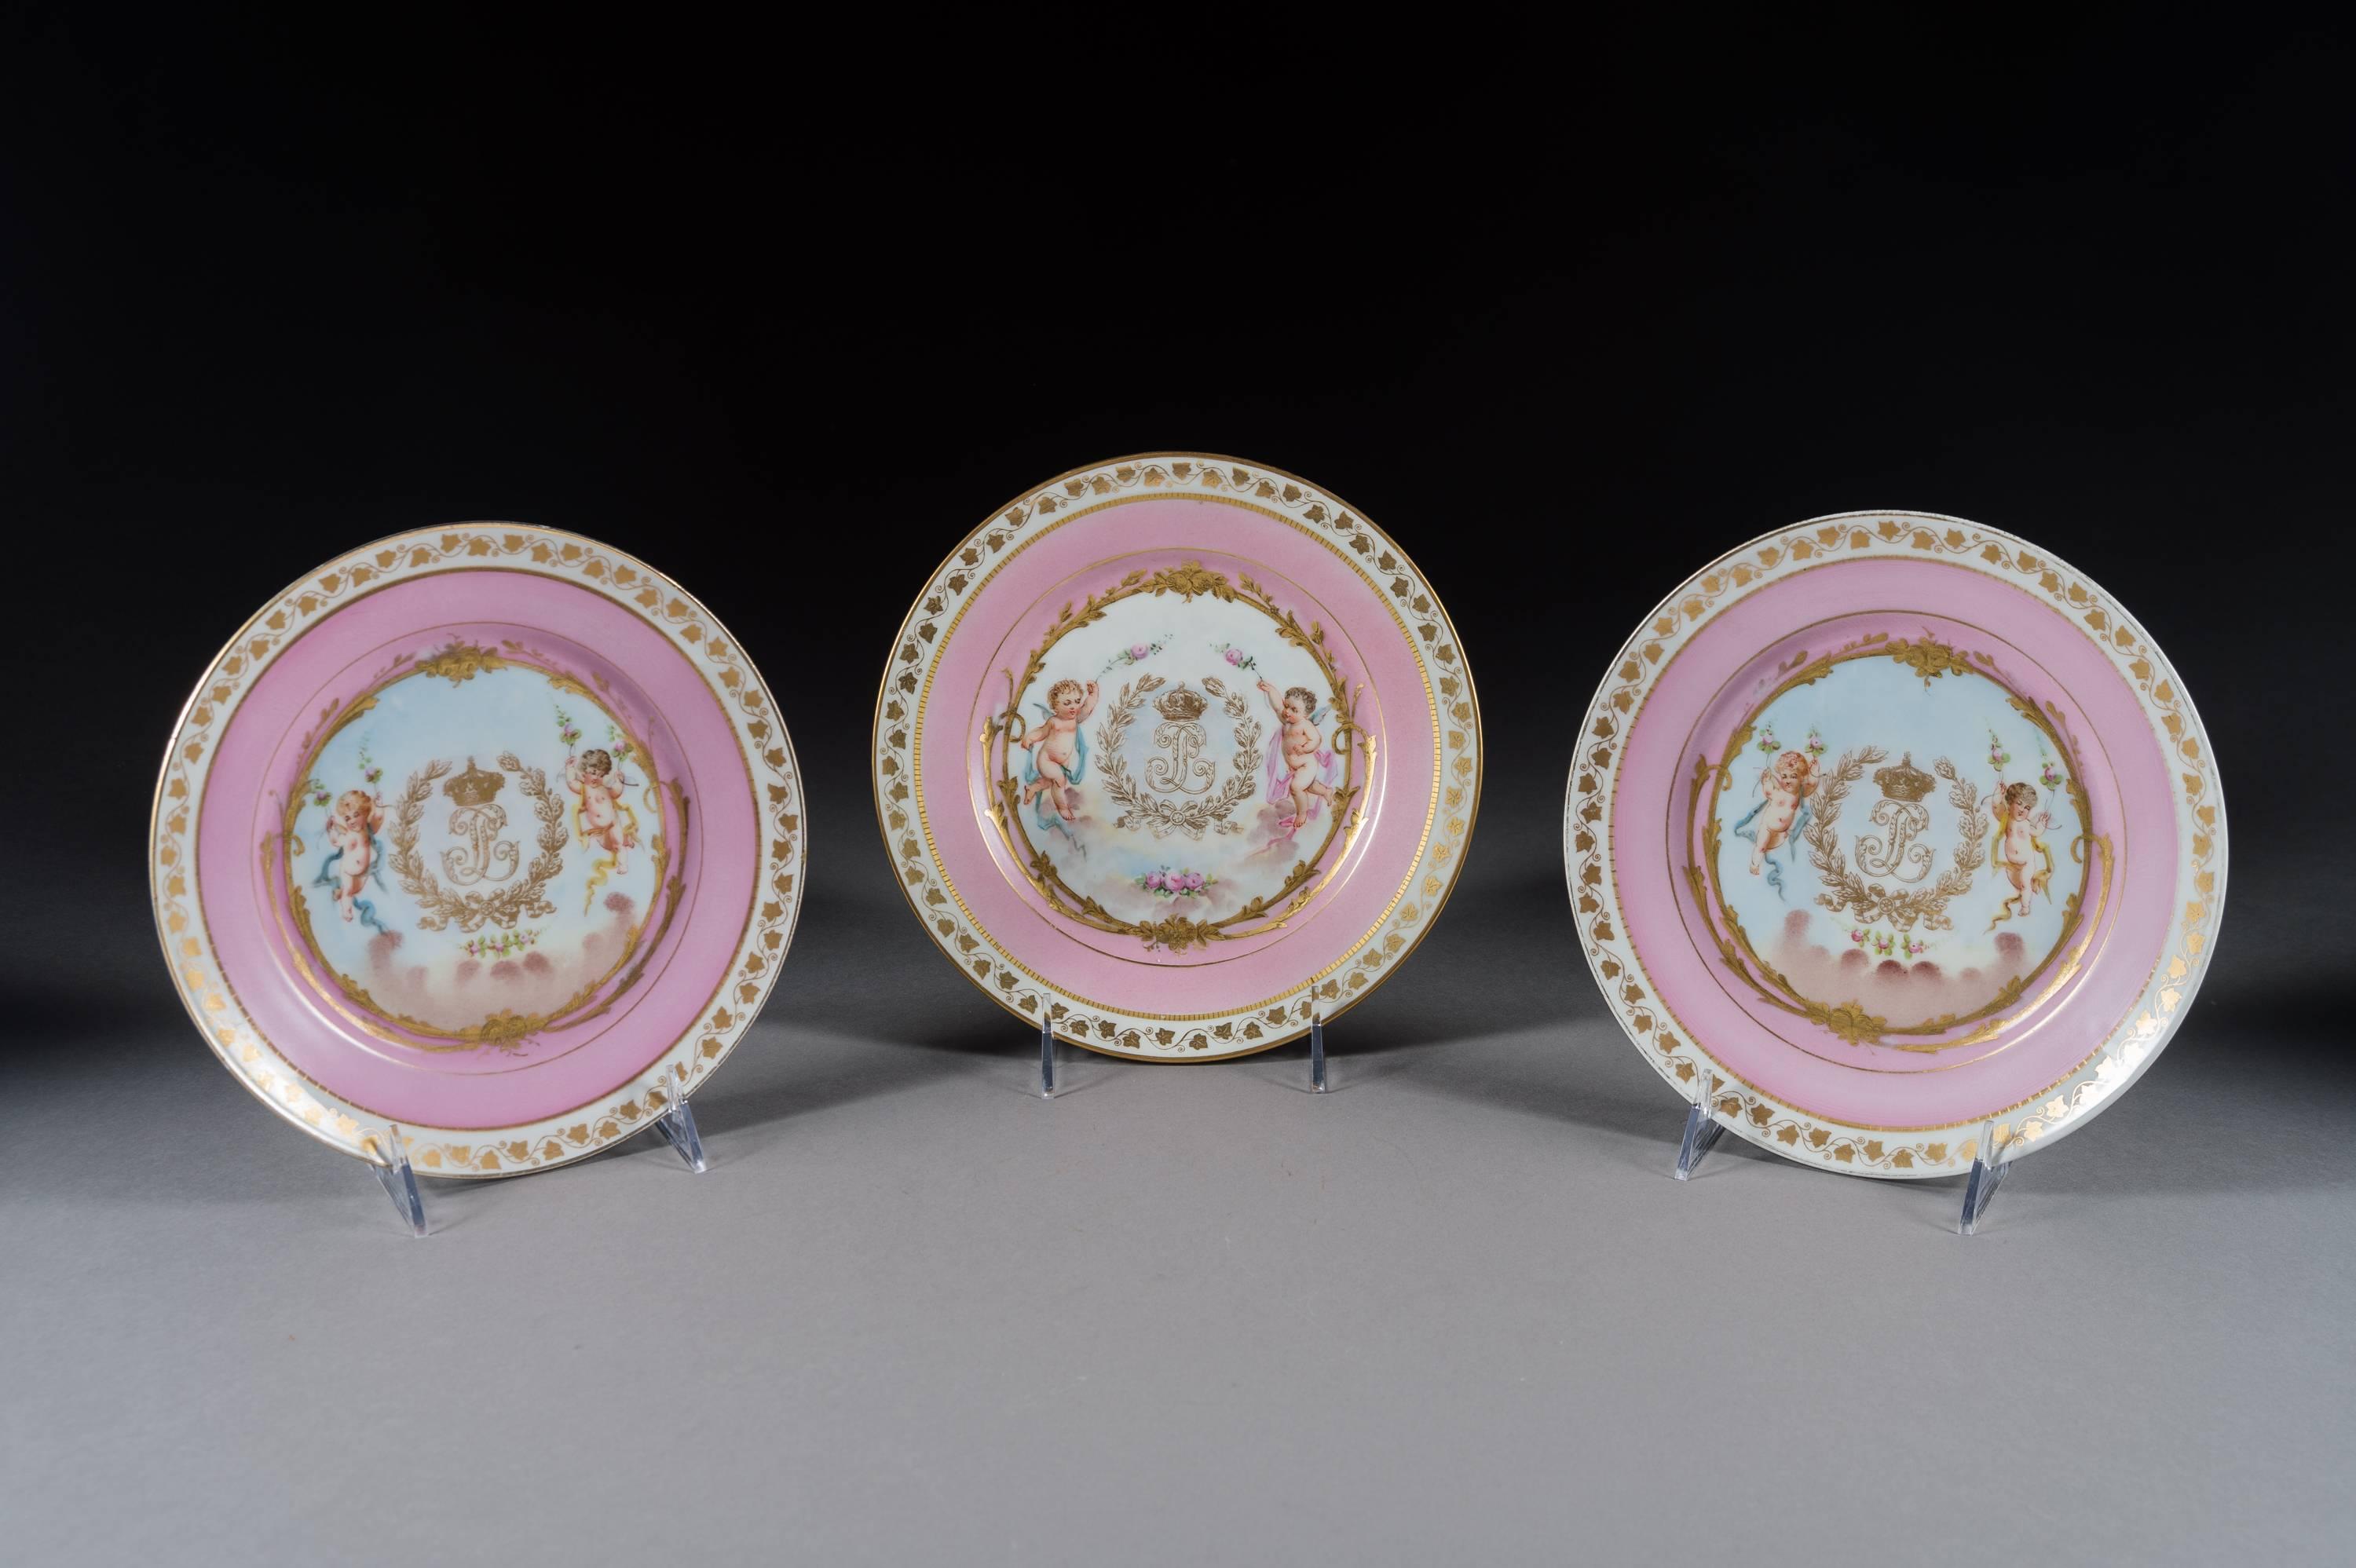 Très bel ensemble de 12 assiettes en porcelaine de Sèvres peinte et ornée de bijoux. 

Chacun avec une bordure or et rose avec une peinture centrale représentant des chérubins avec une guirlande de fleurs, avec des armoiries royales en or.